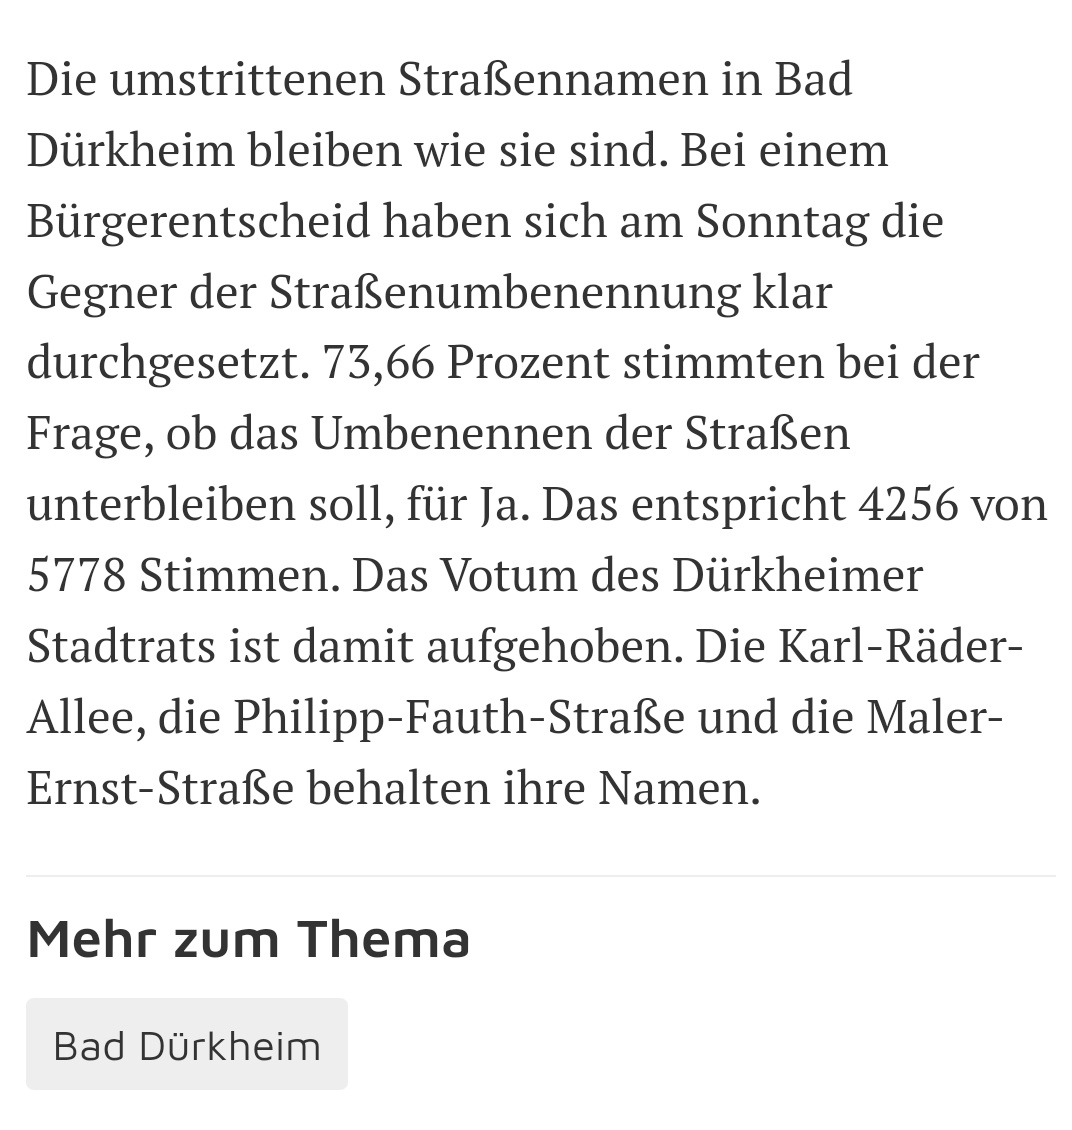 RLP 
Strassennamen NSbelasteter sollten geändert werden, der Stadtrat hatte das in BadDürkheim so beschlossen. Nun bleiben die Ehrungen, ein Bürgerentscheid will das so. Wundert mich bei der Querbürgerhochburg kein bisschen.